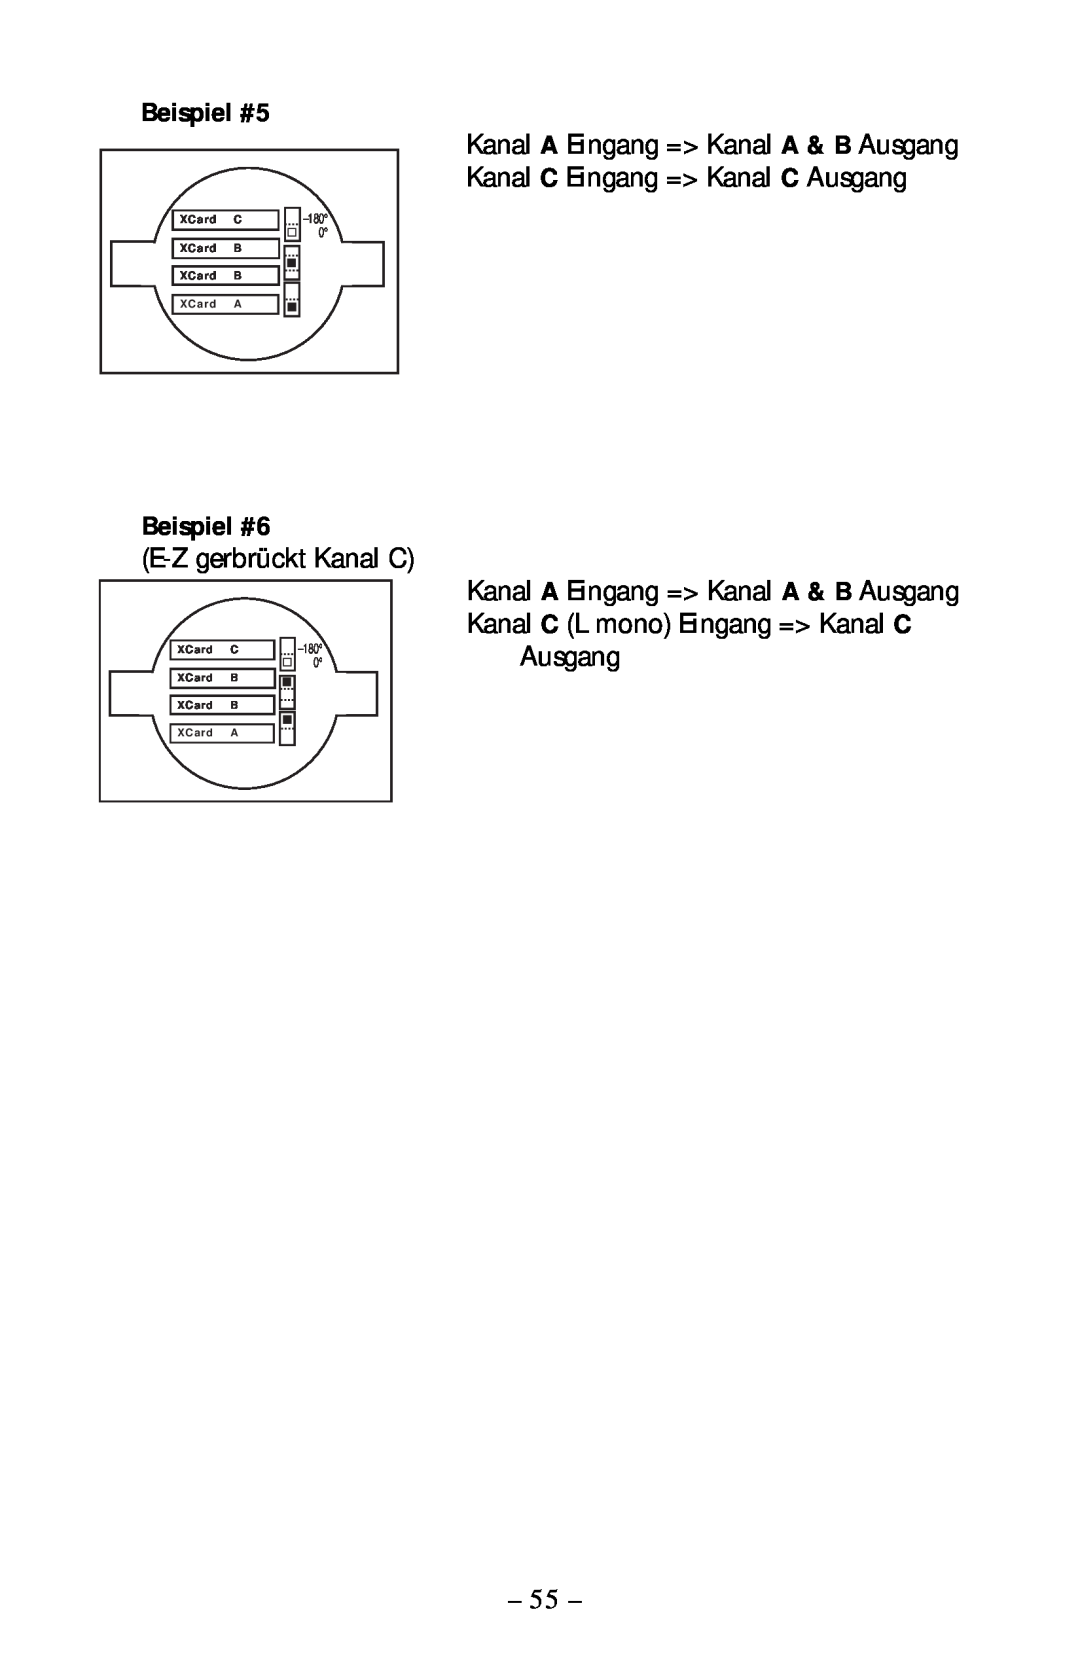 Rockford Fosgate 360.6 manual Beispiel #5, Beispiel #6, E-Zgerbrückt Kanal C, Ausgang 